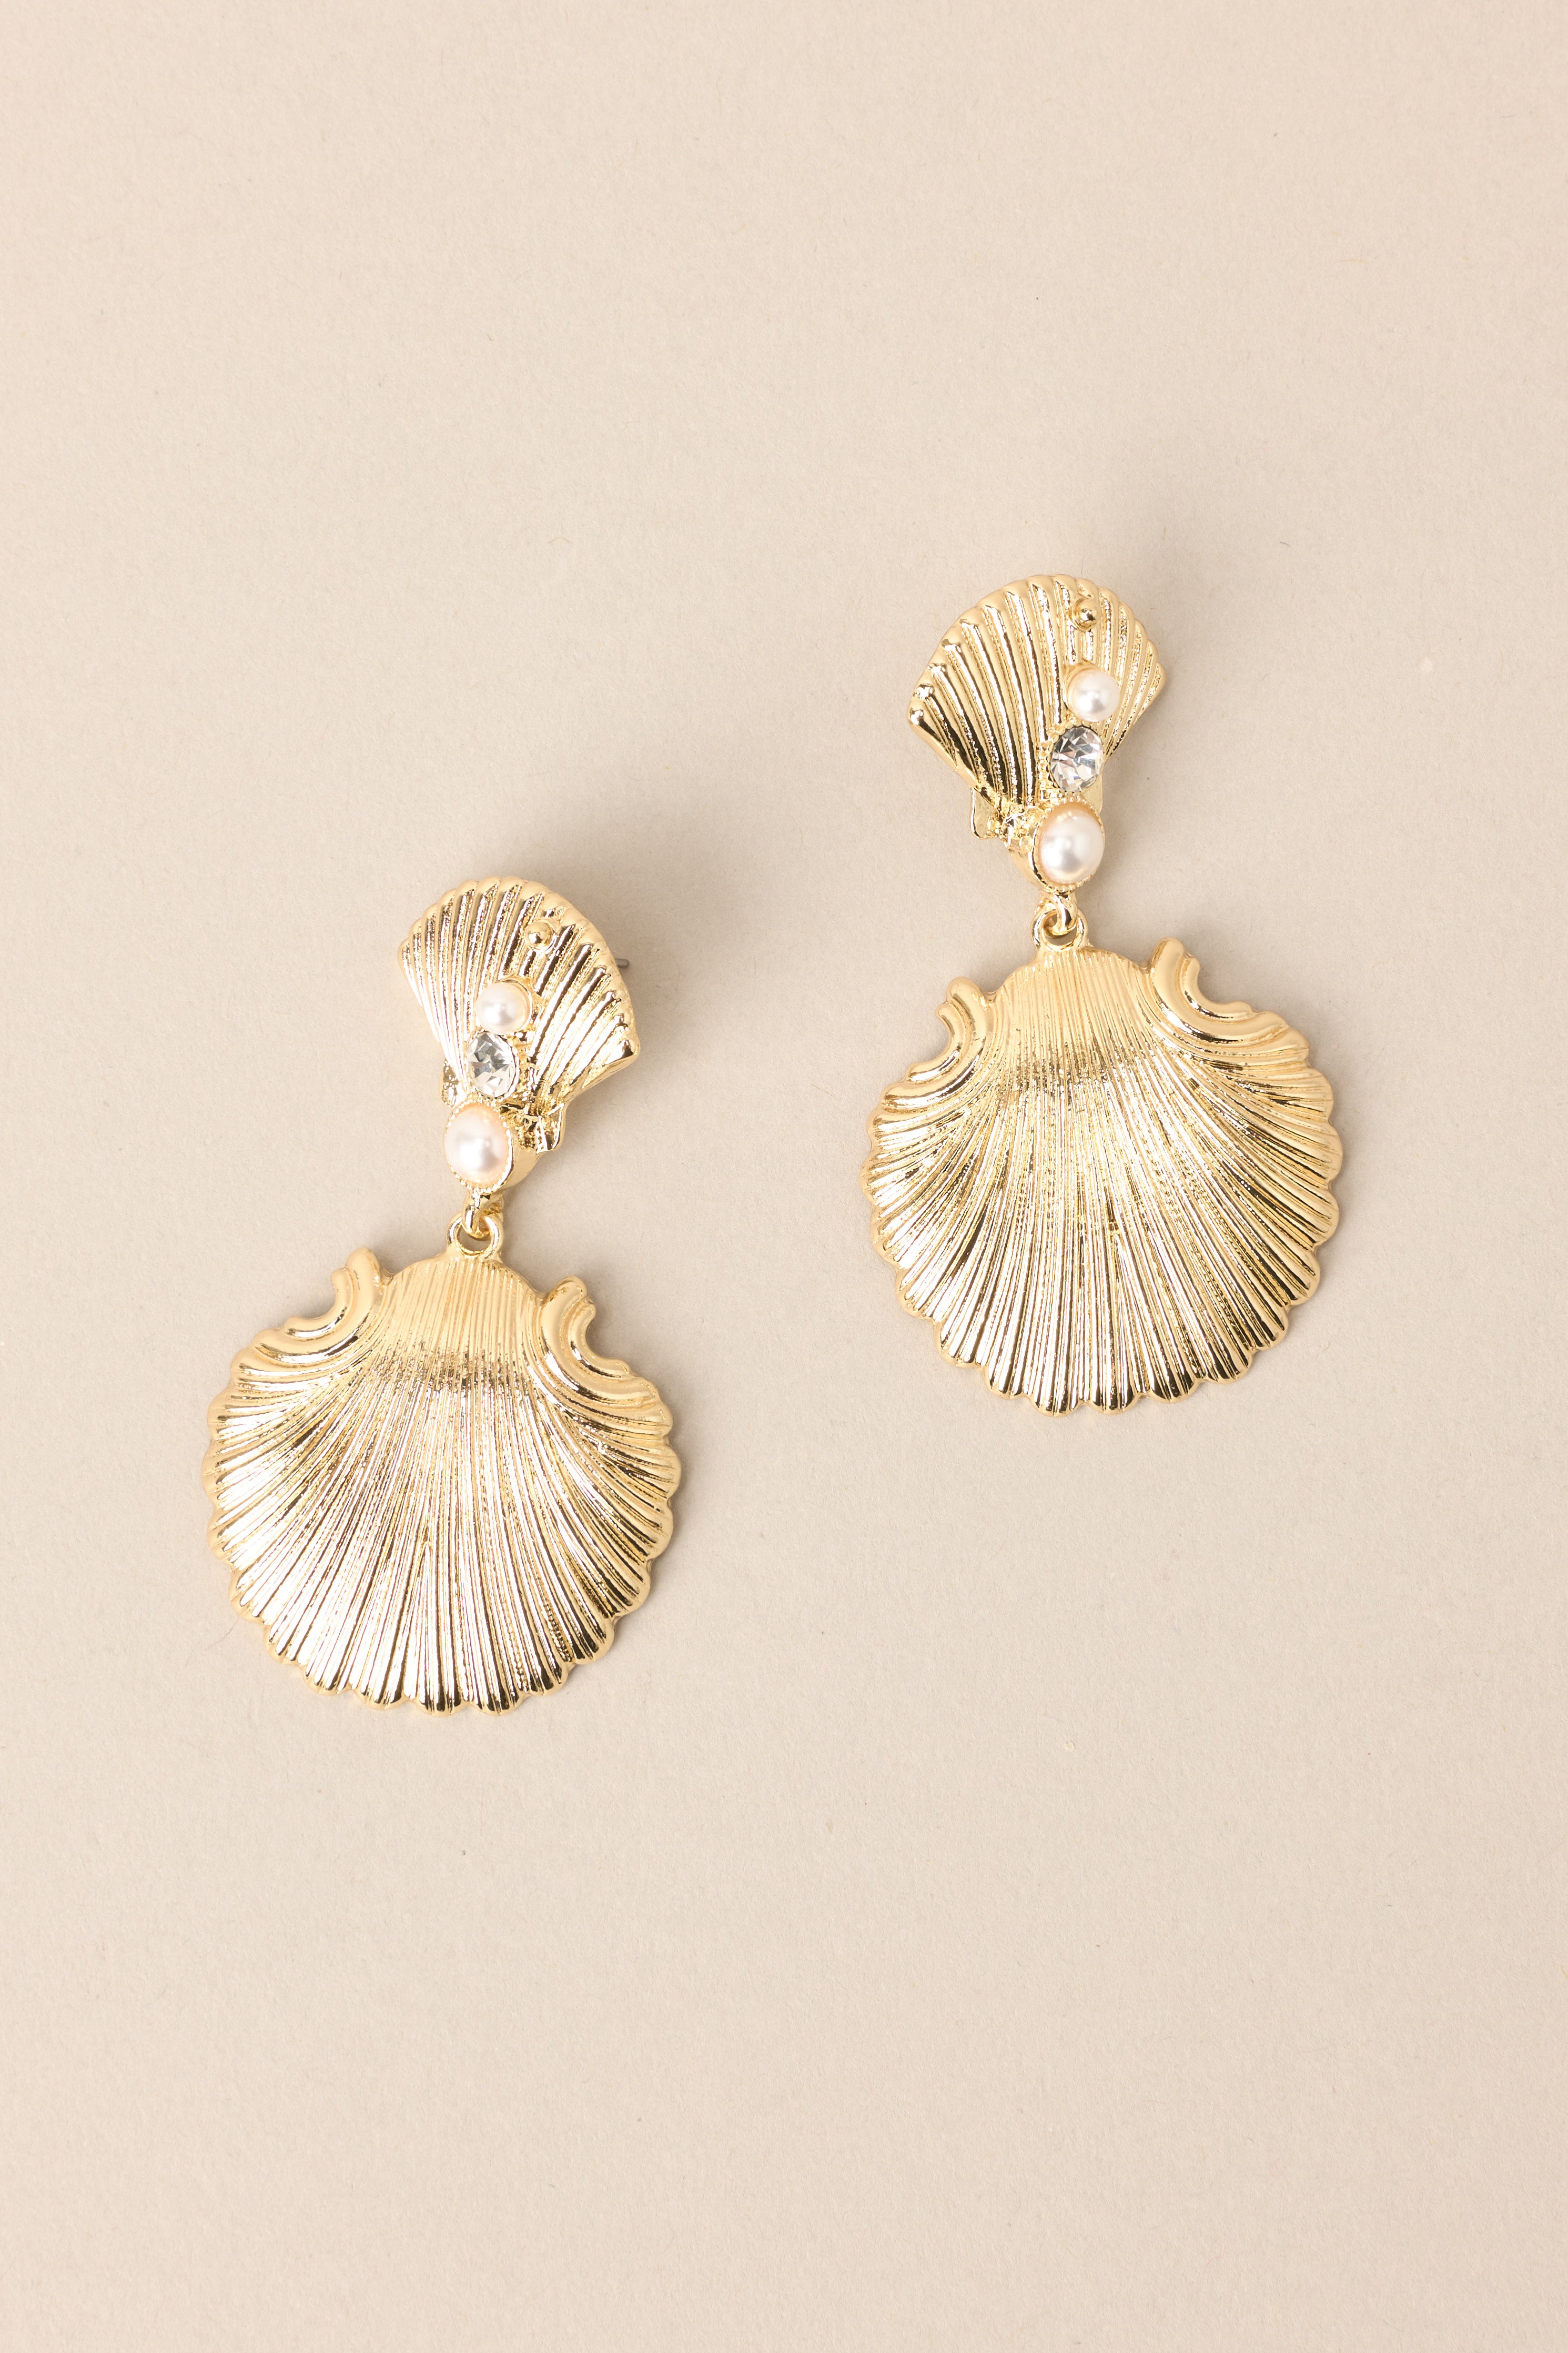 Seaside Chic Gold Earrings